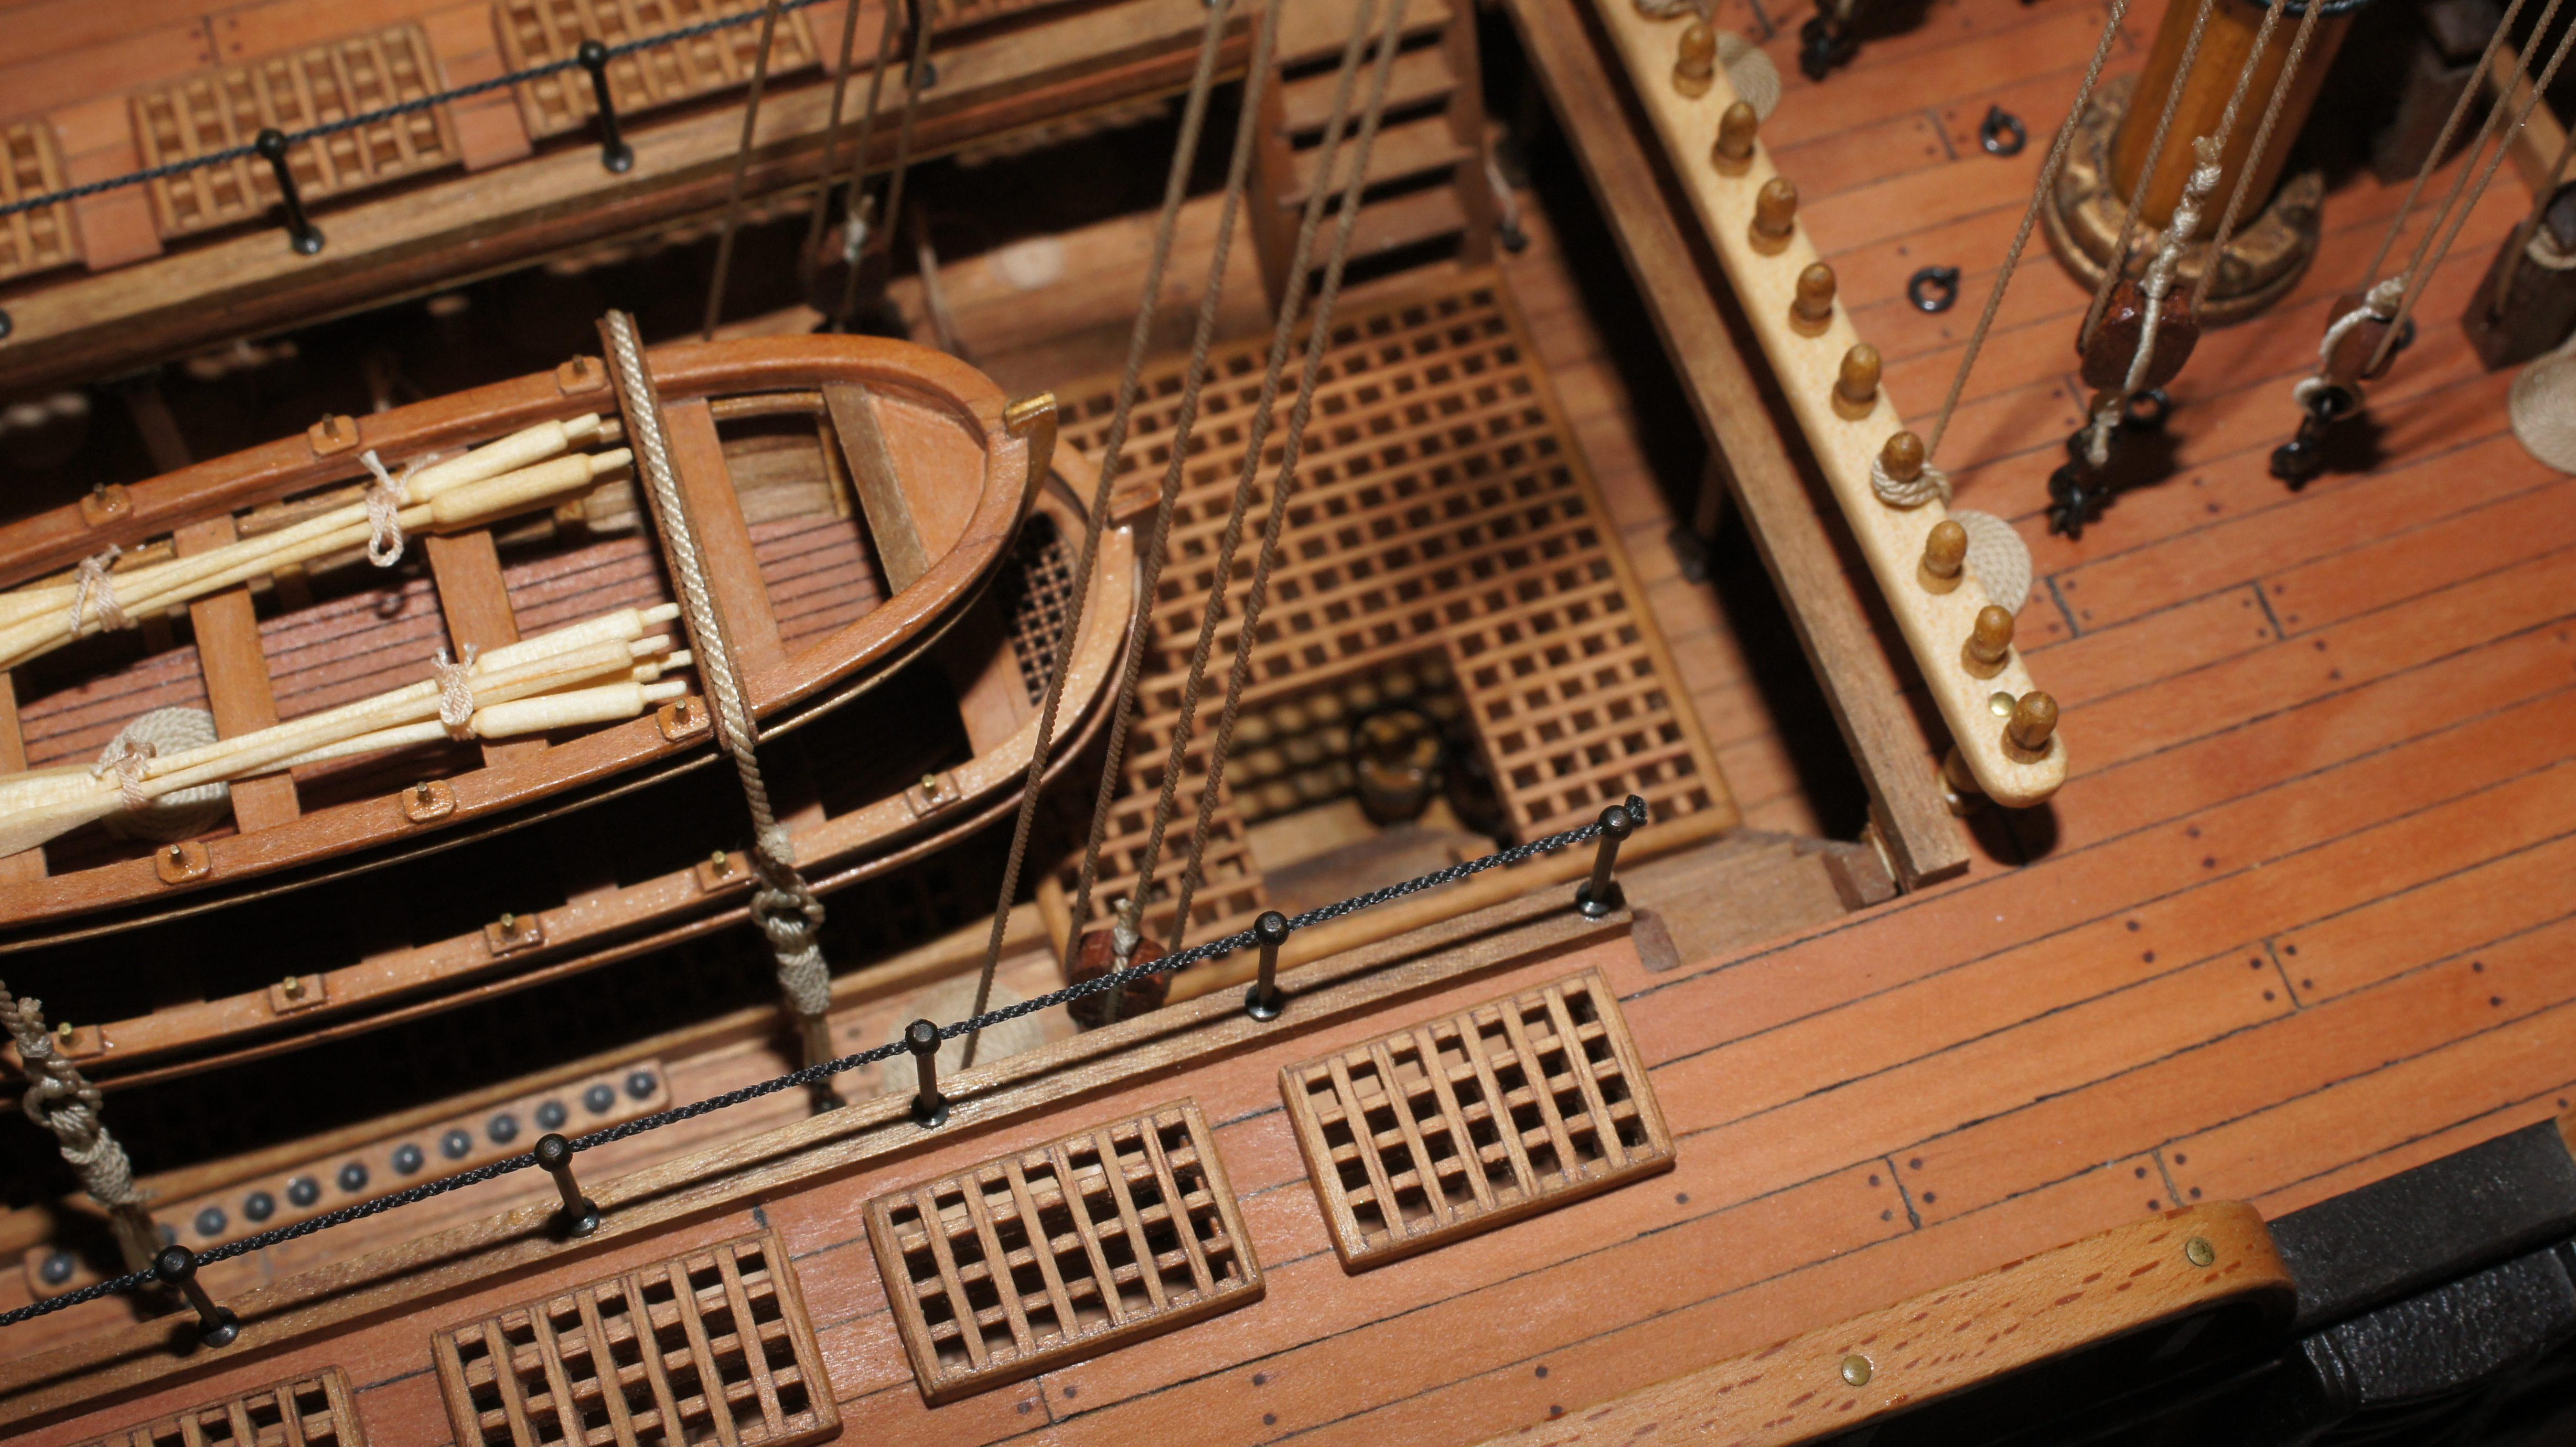 Между палубами. Двенадцать апостолов линейный корабль, 1841. HMS Victory 1765 каюта капитана. Модель корабля Sirene масштаб 1:75. HMS Victory 1765 внутри.